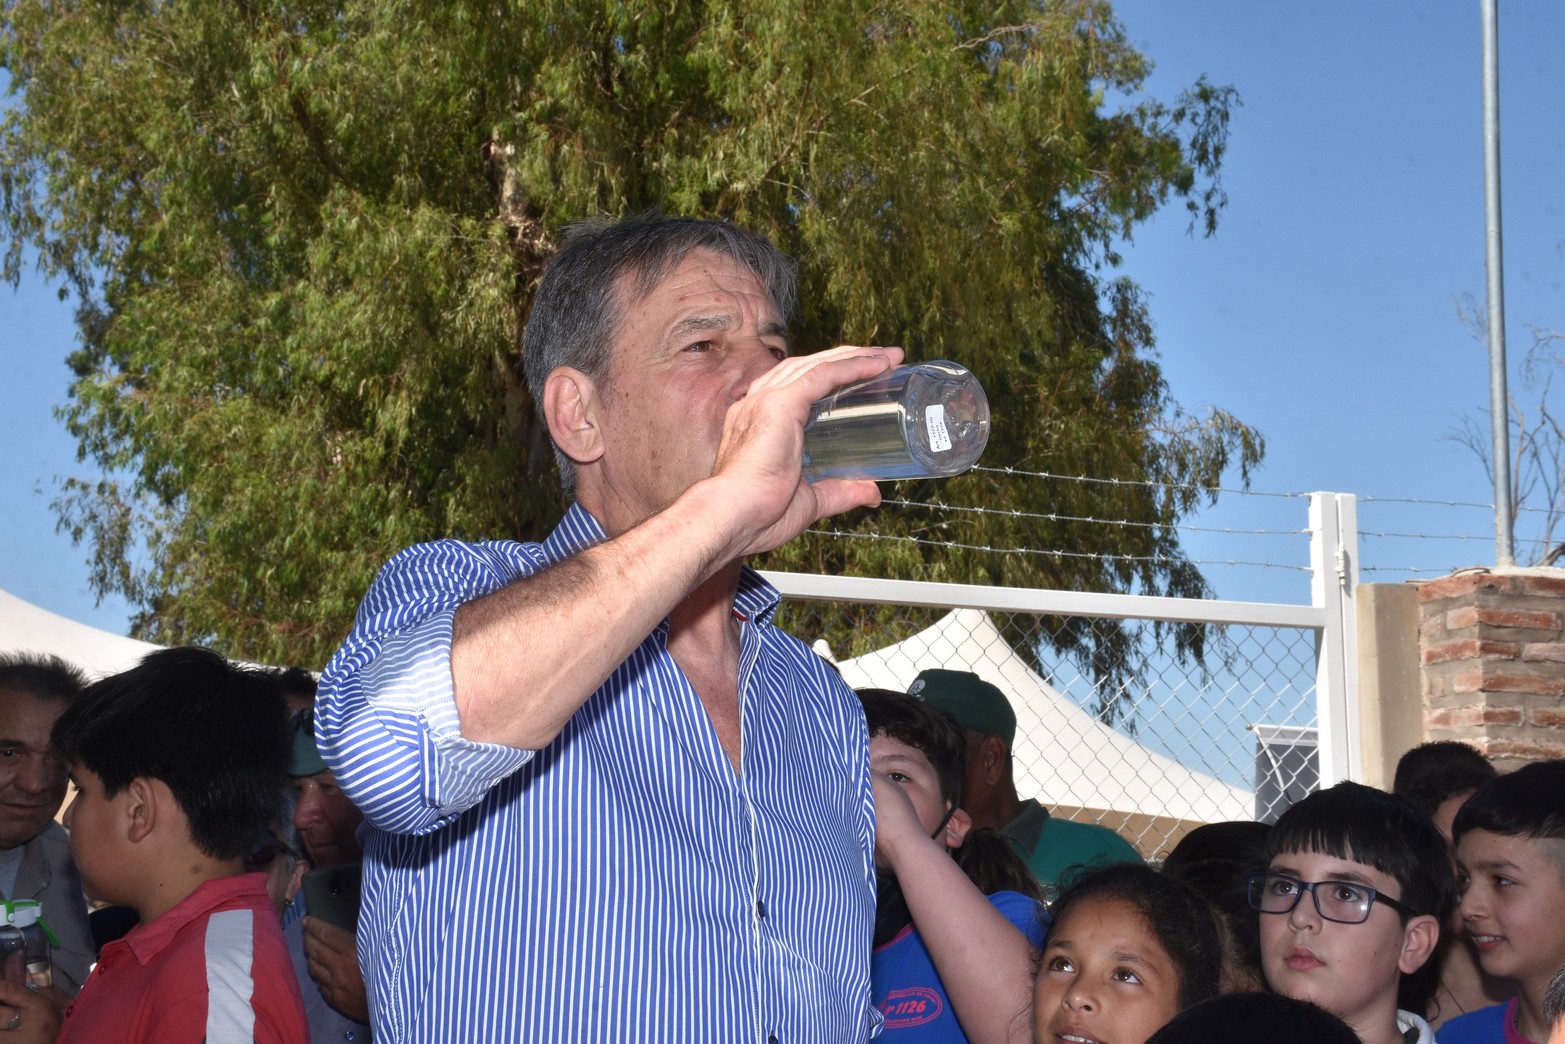 El servicio de agua dulce beneficiará a mas de 330 viviendas, lo que representa mas de 1.000 personas.